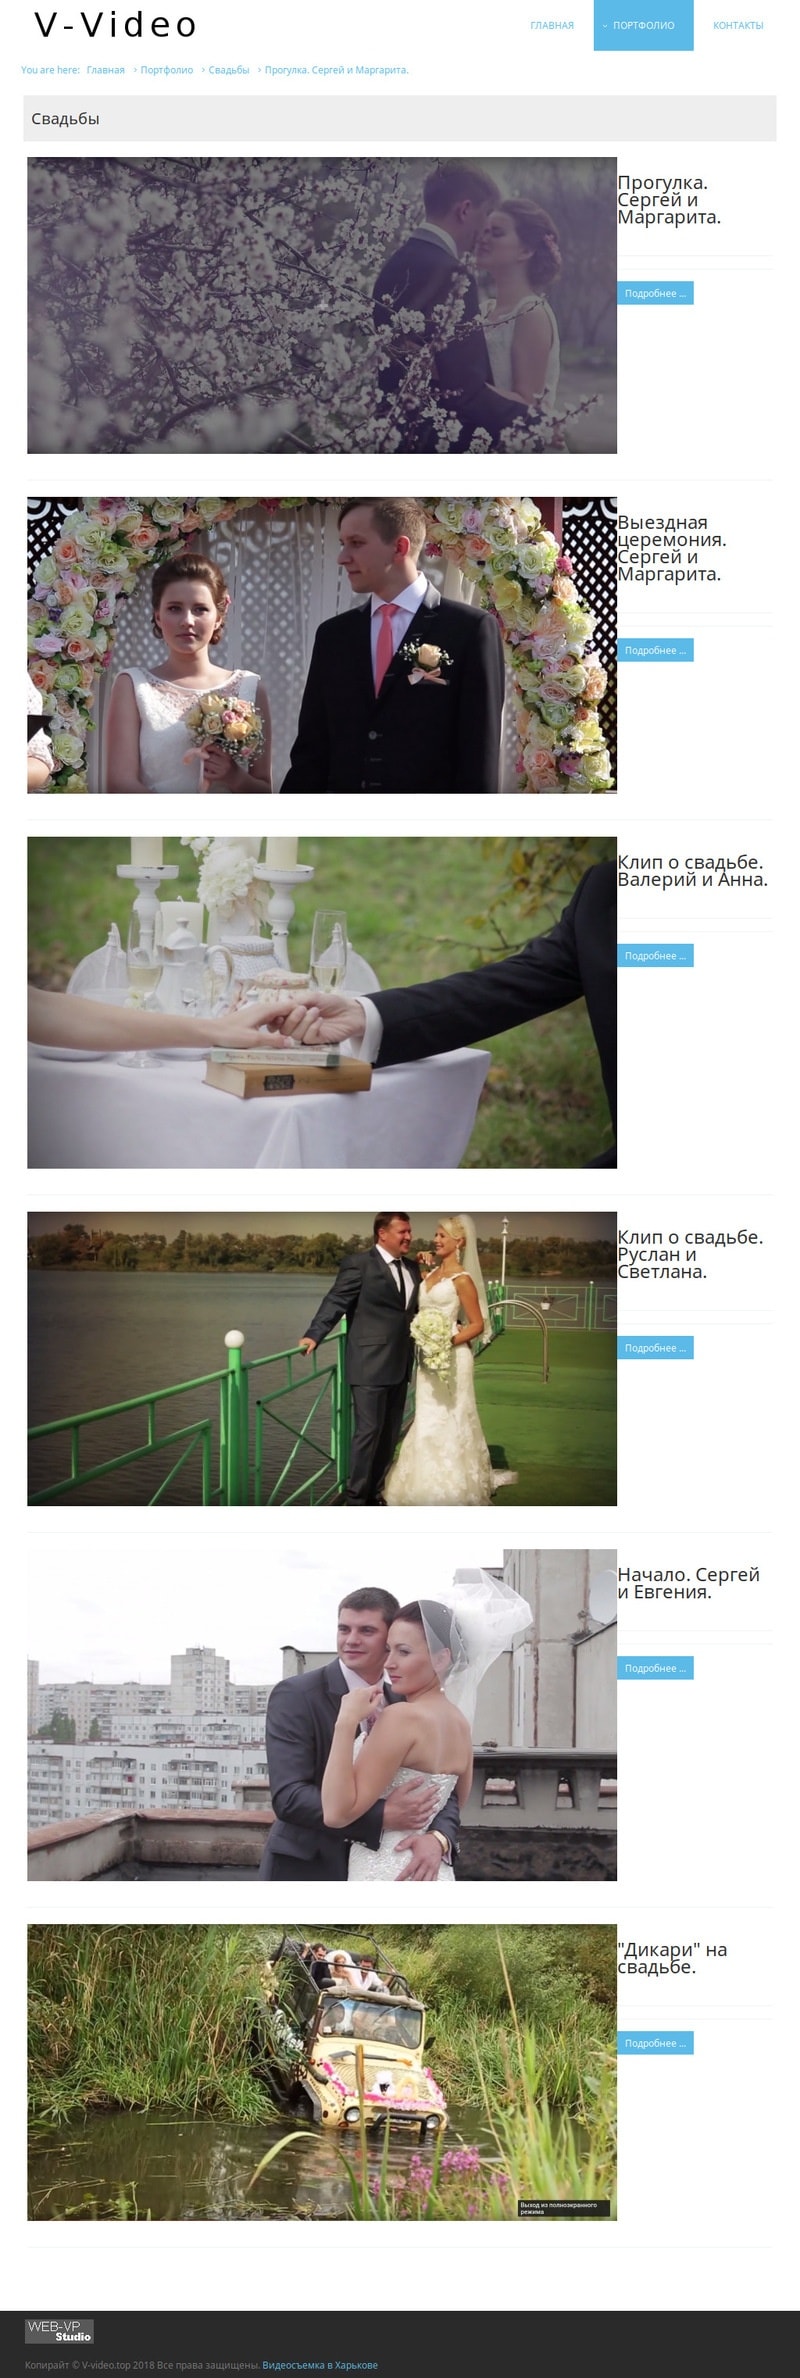 внутренняя страница в-видео - свадьбы